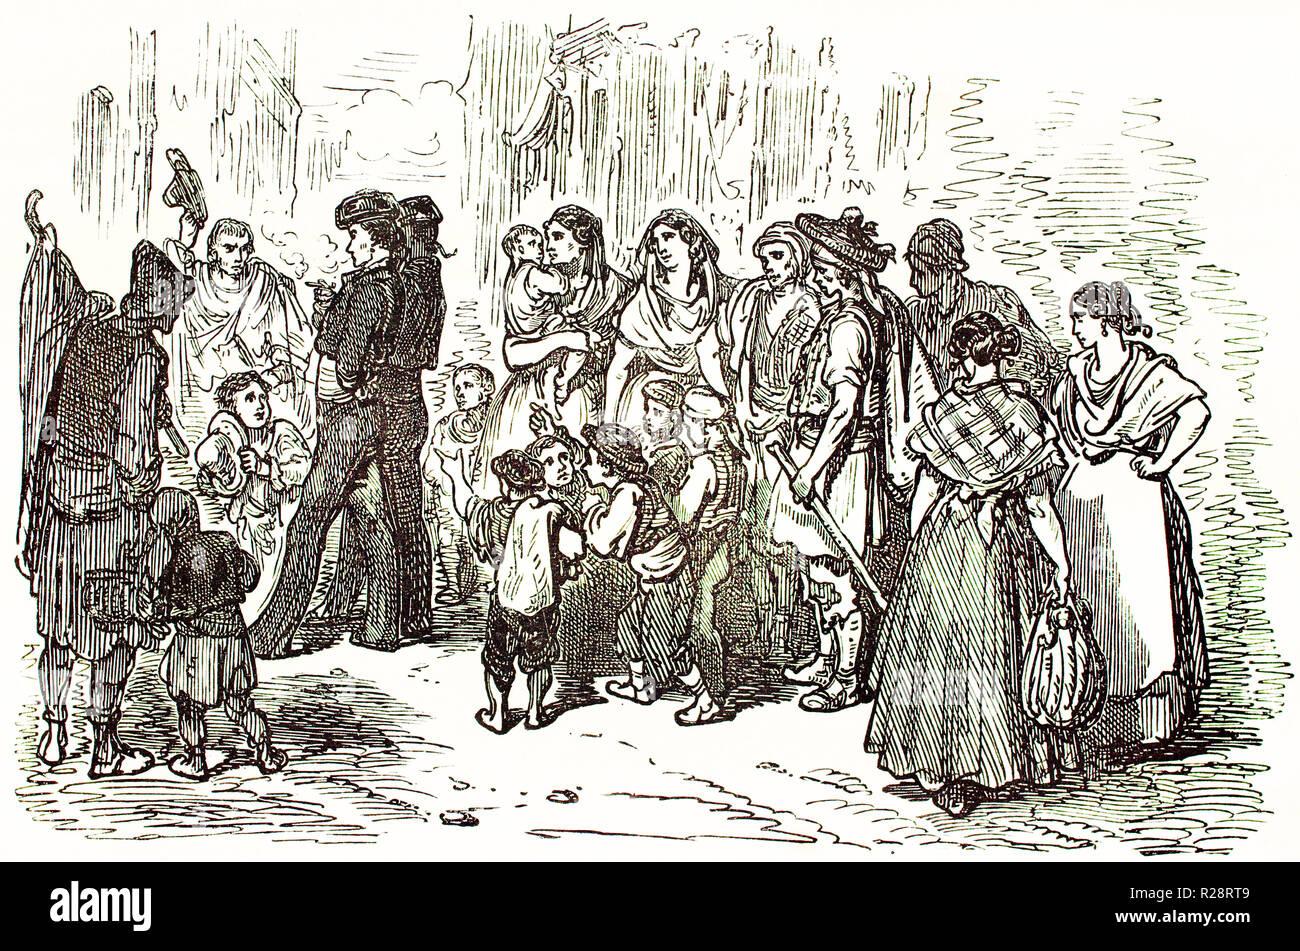 Vieille illustration toreadors parmi les personnes à Valence, en Espagne. Par Dore, publ. sur le Tour du Monde, Paris, 1863 Banque D'Images